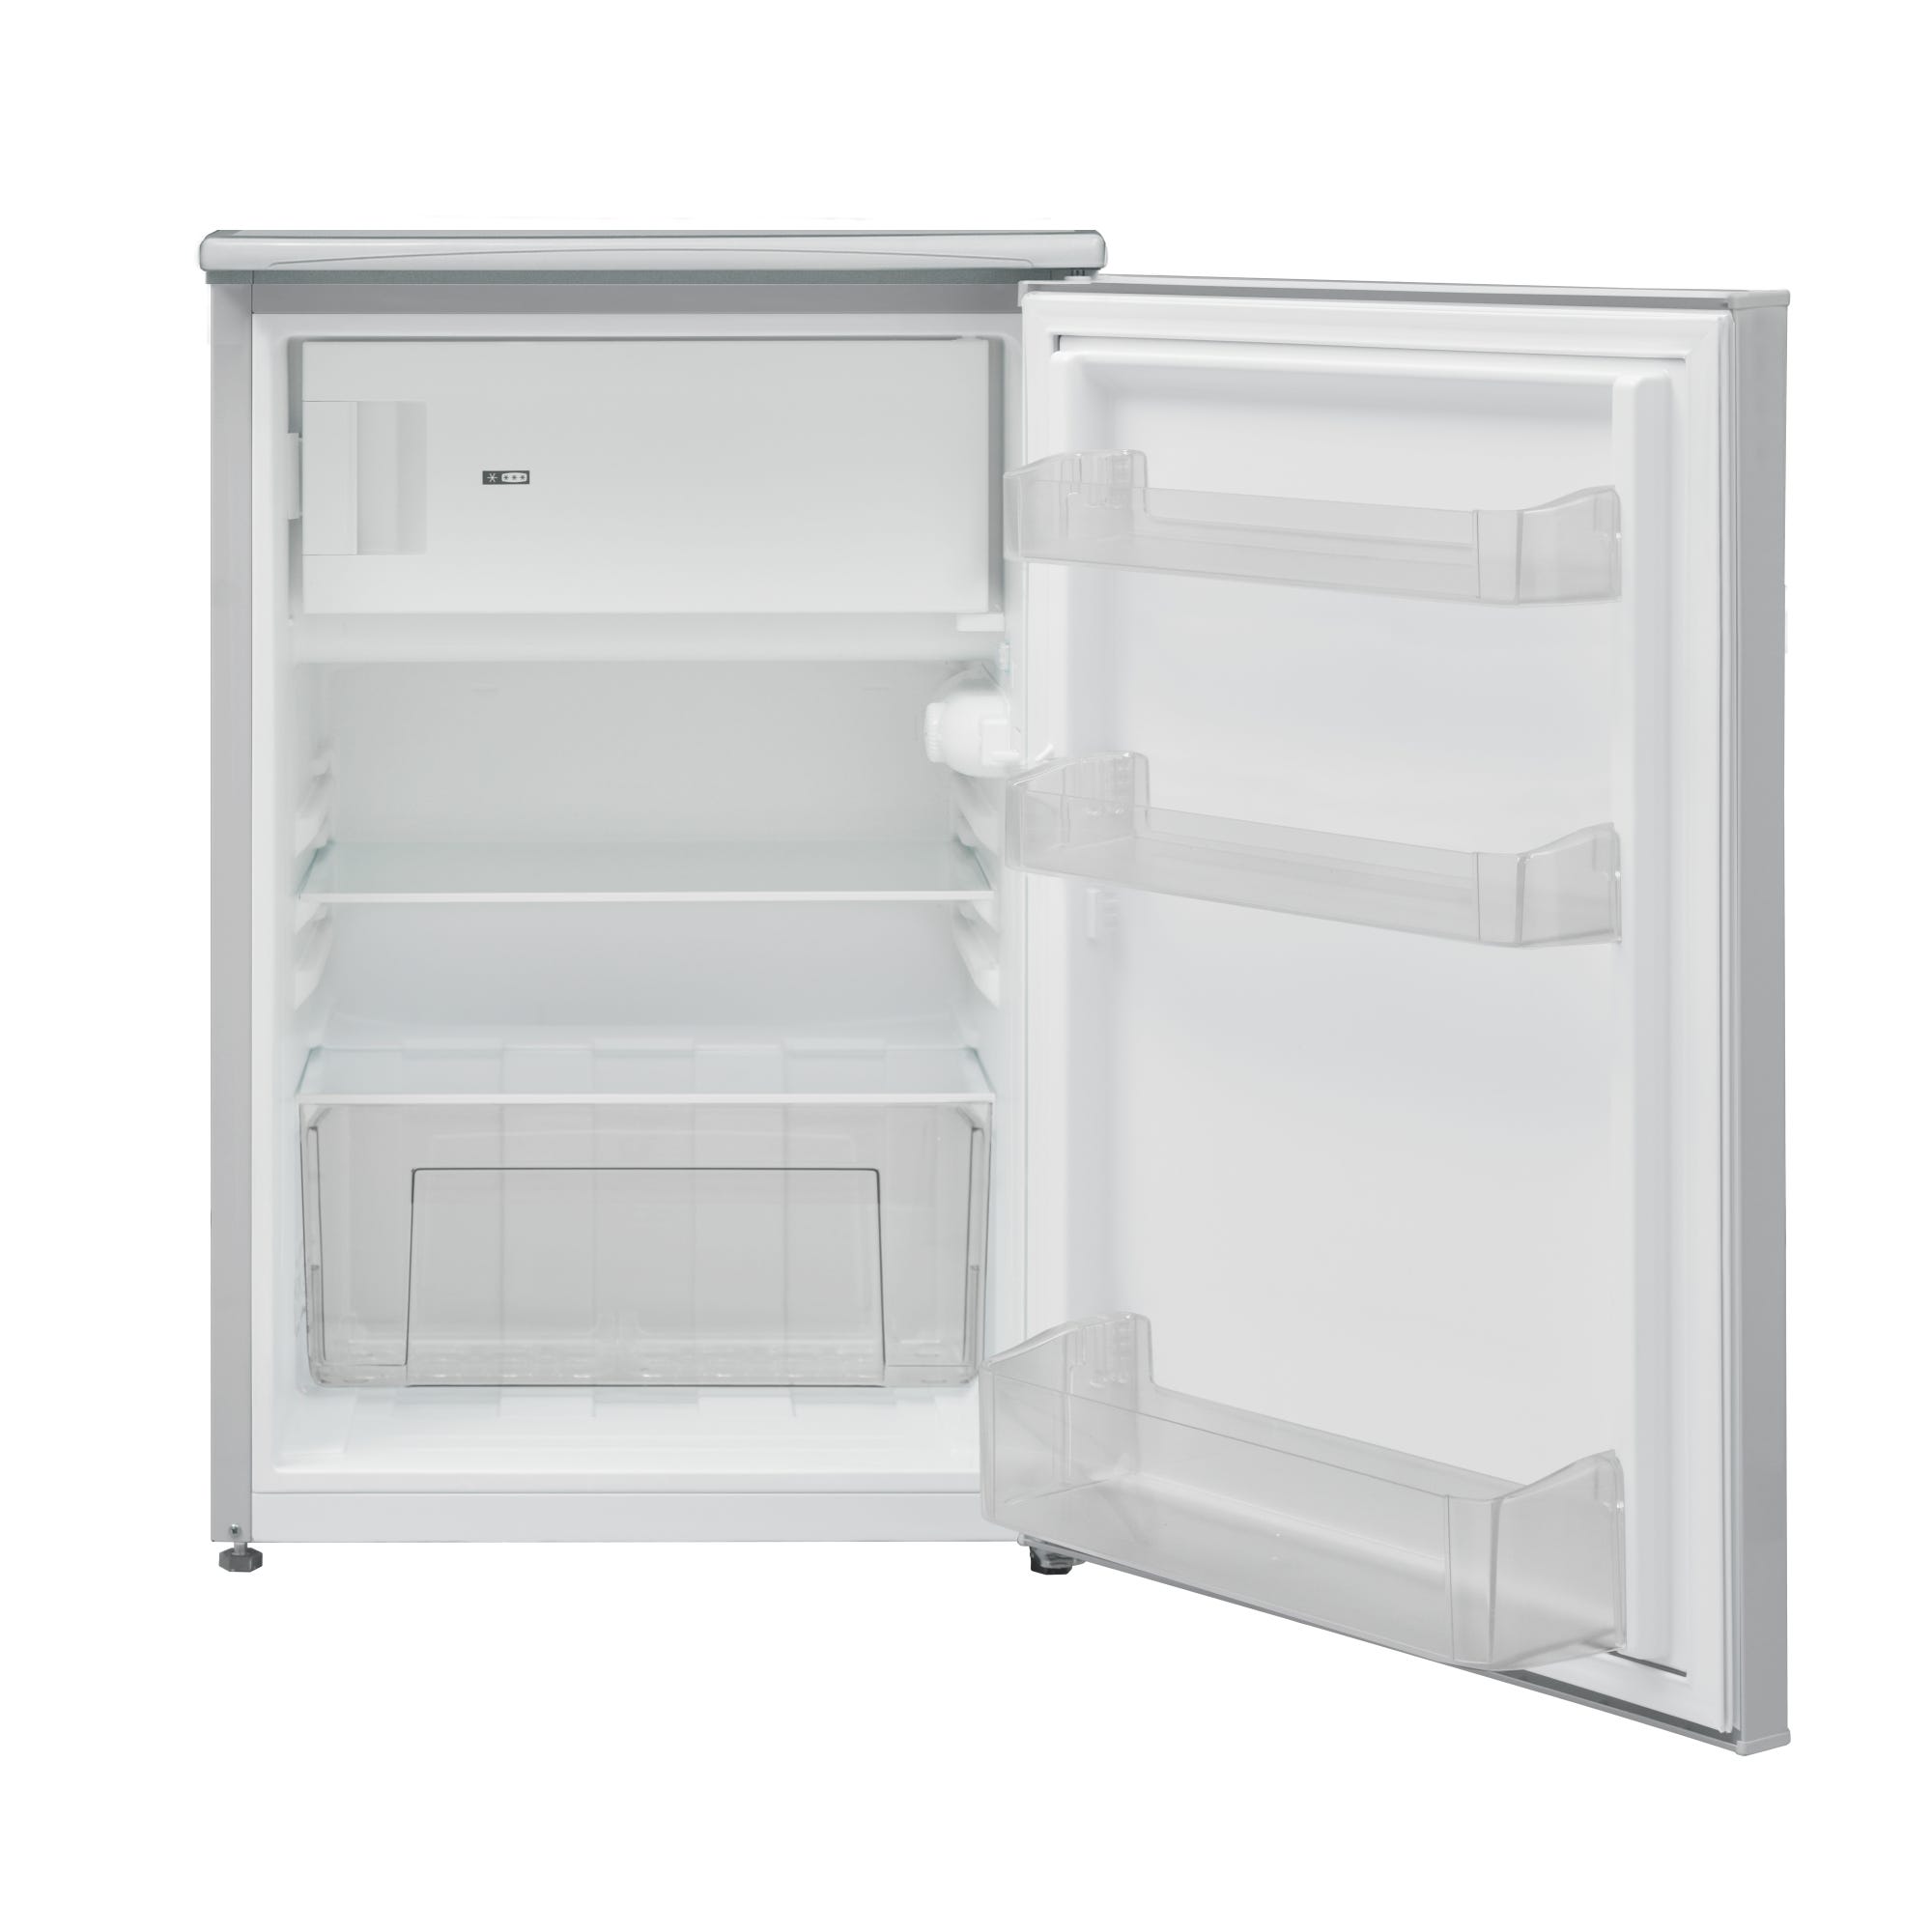 SOLDES ! - Achat Réfrigérateur table top - Sans congélateur pas